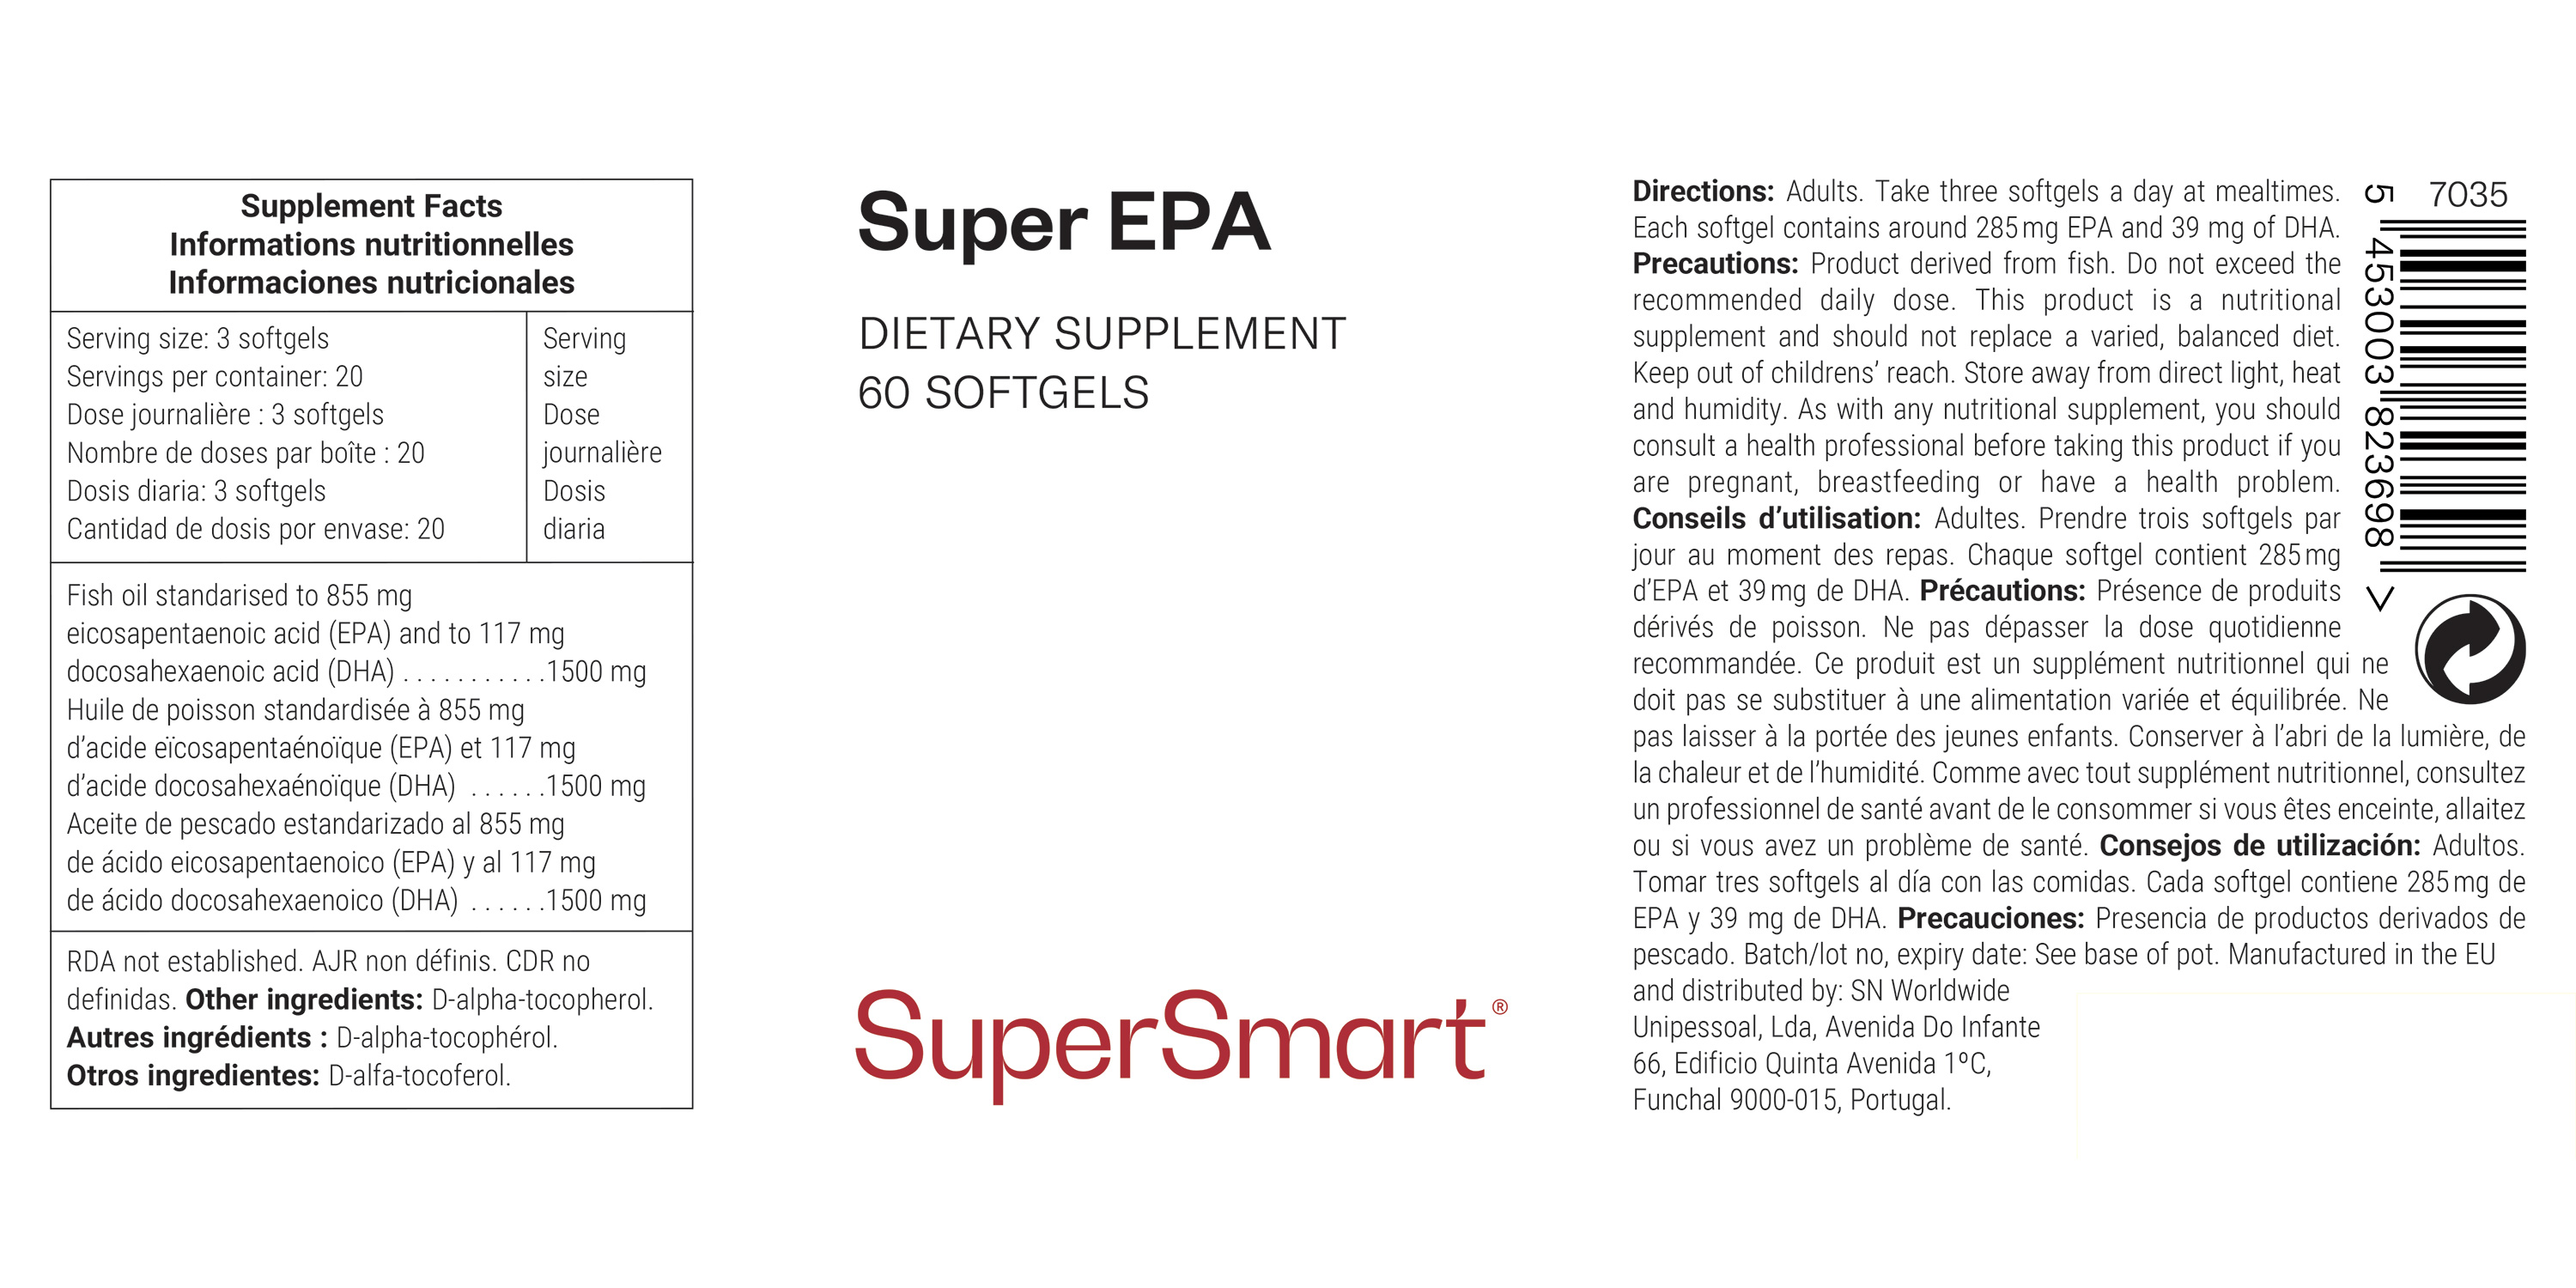 Super EPA